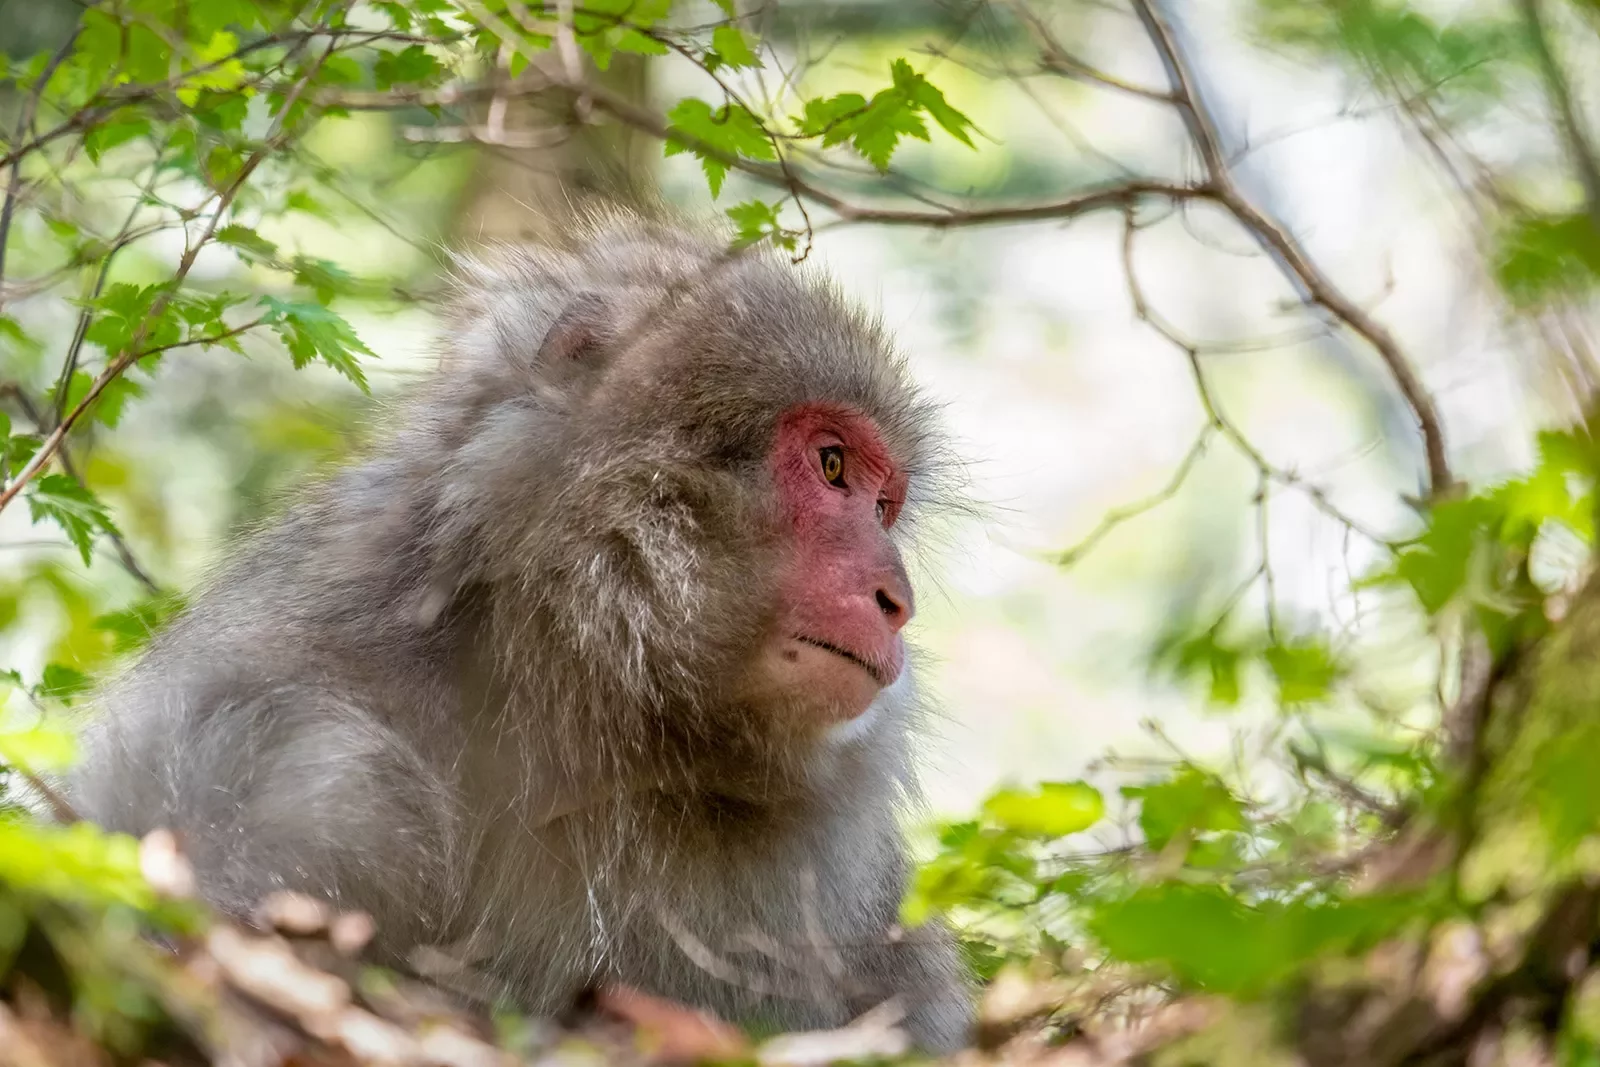 Monkey in a tree in Japan